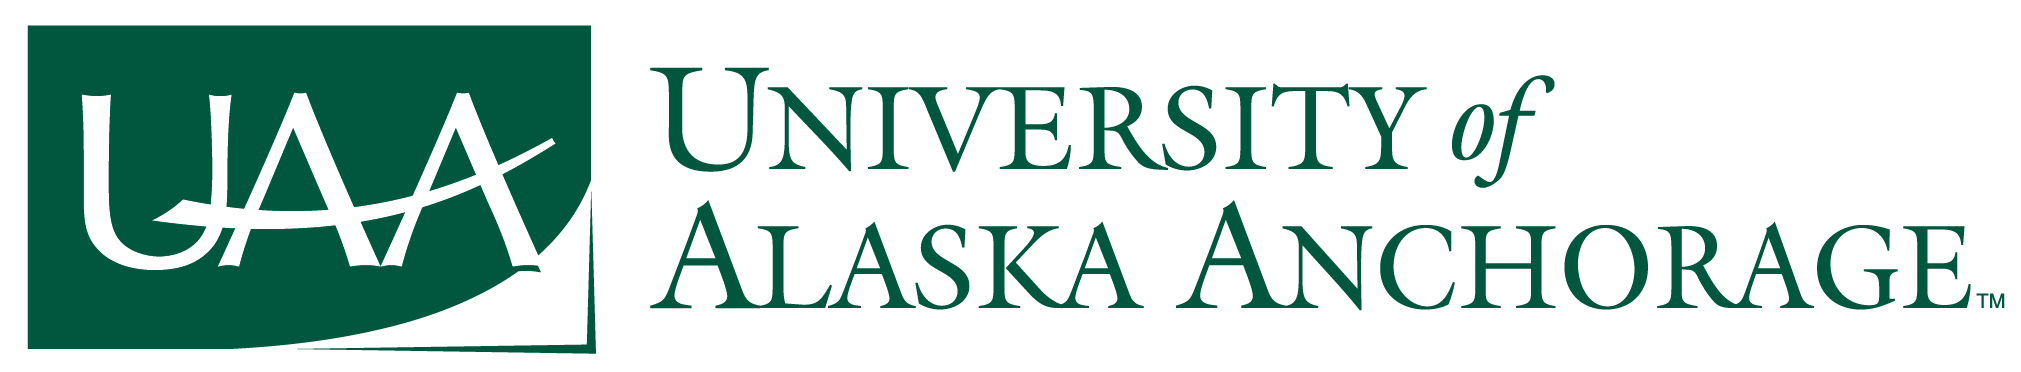 University of Alaska Anchorage``